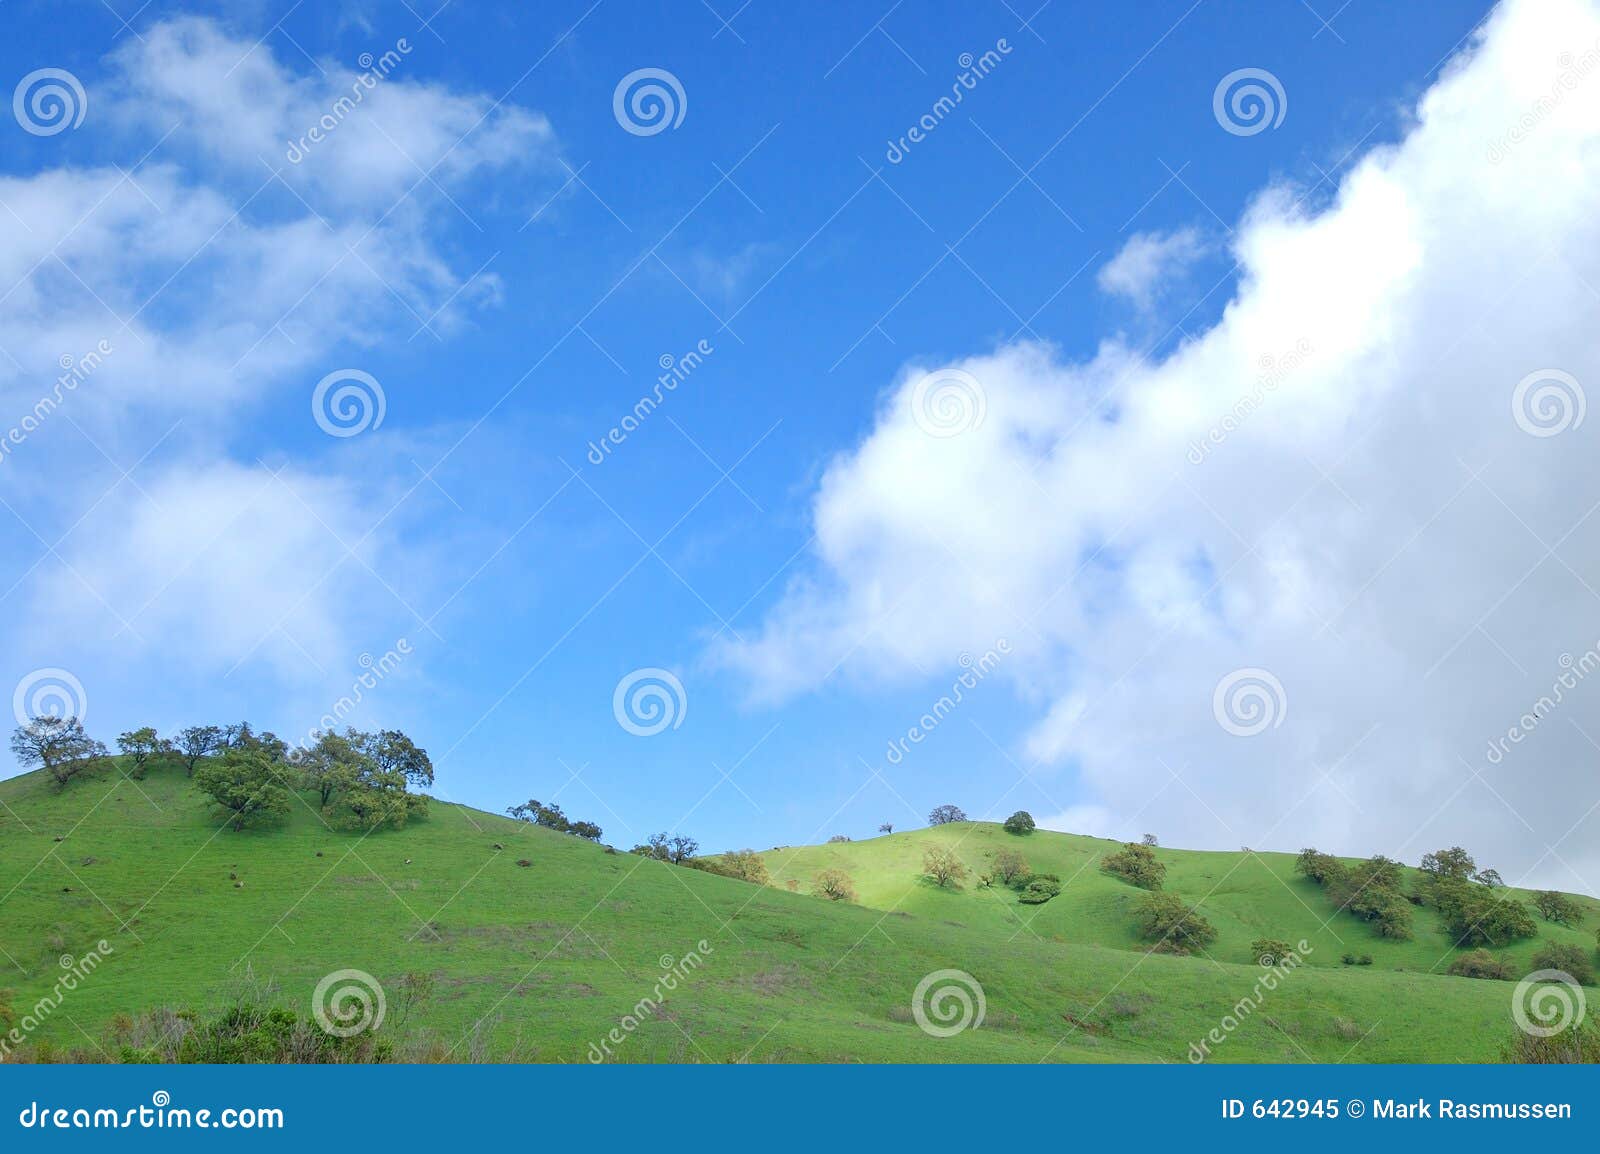 verdant hillside